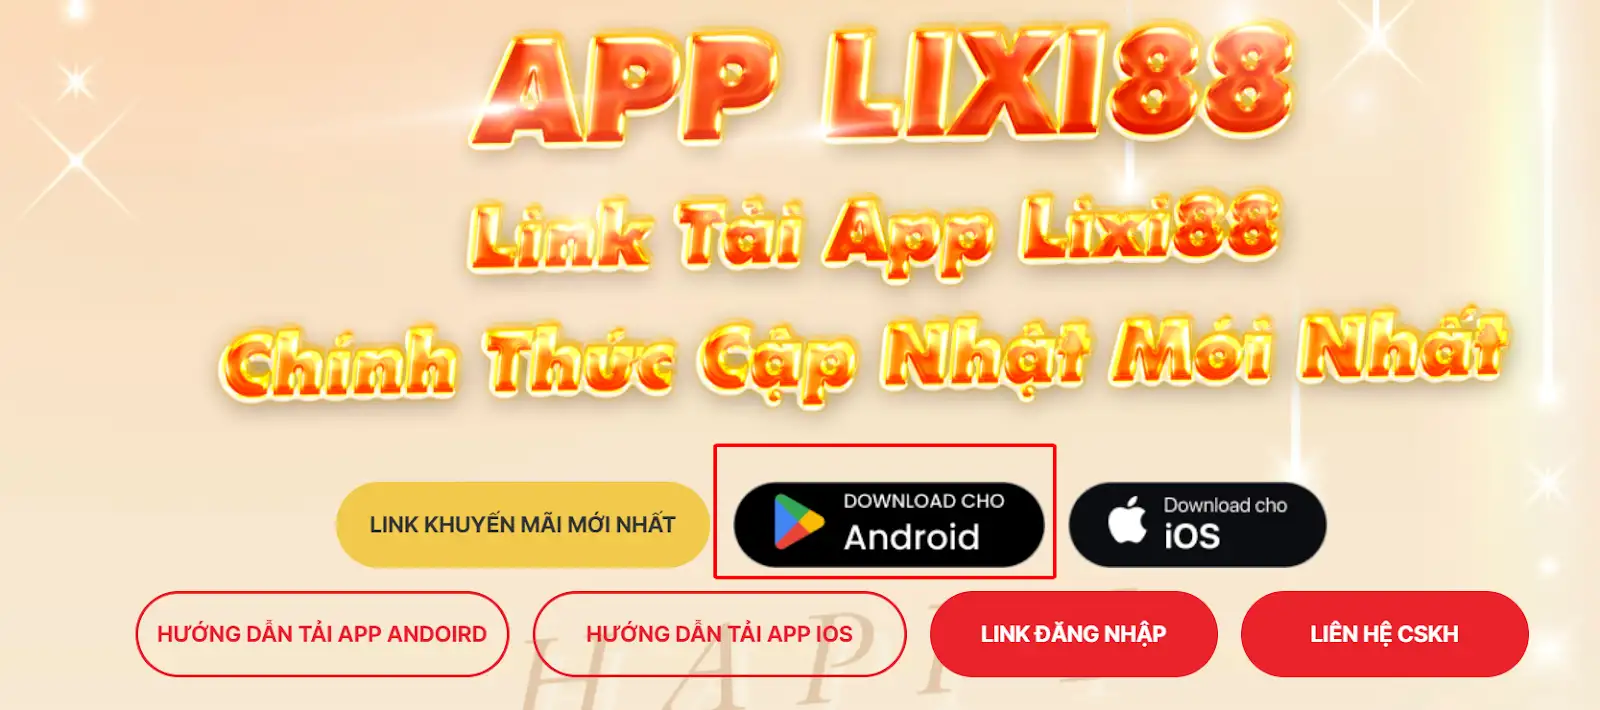 TOP các lưu ý cần biết khi tải app Lixi88 dành cho mọi anh em